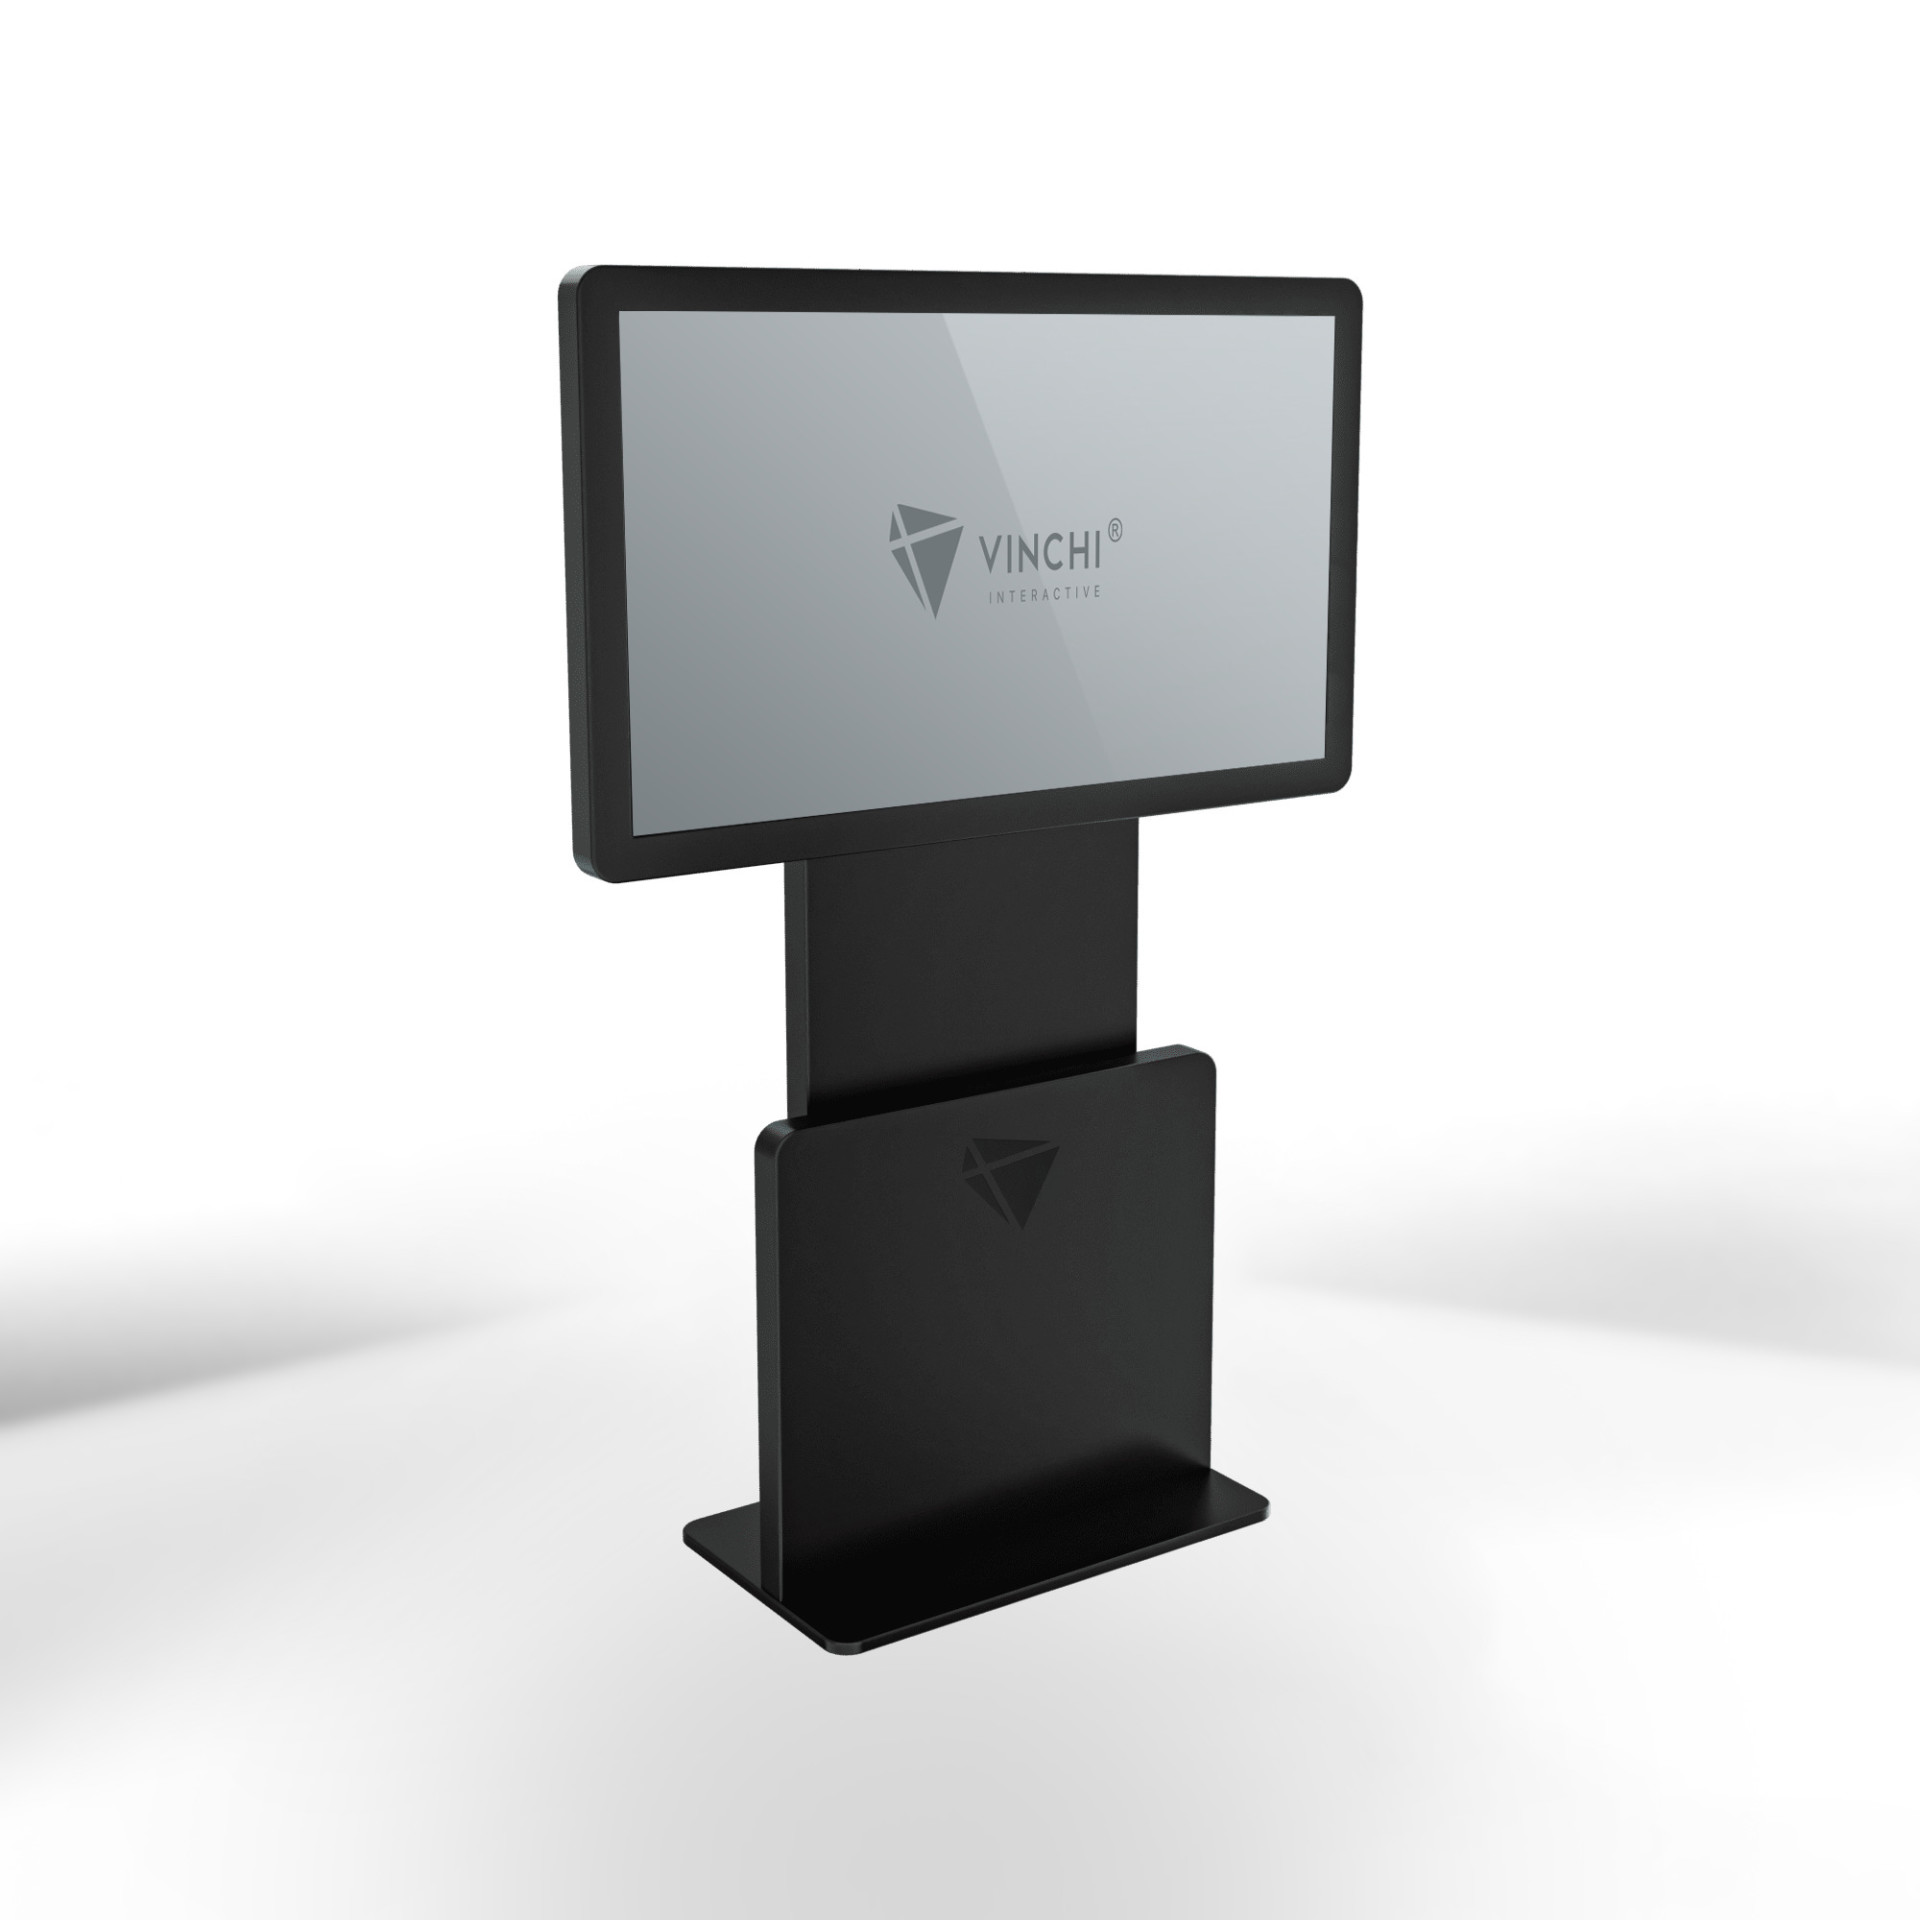 Интерактивный киоск VINCHI 6 с диагональю 55 дюймов